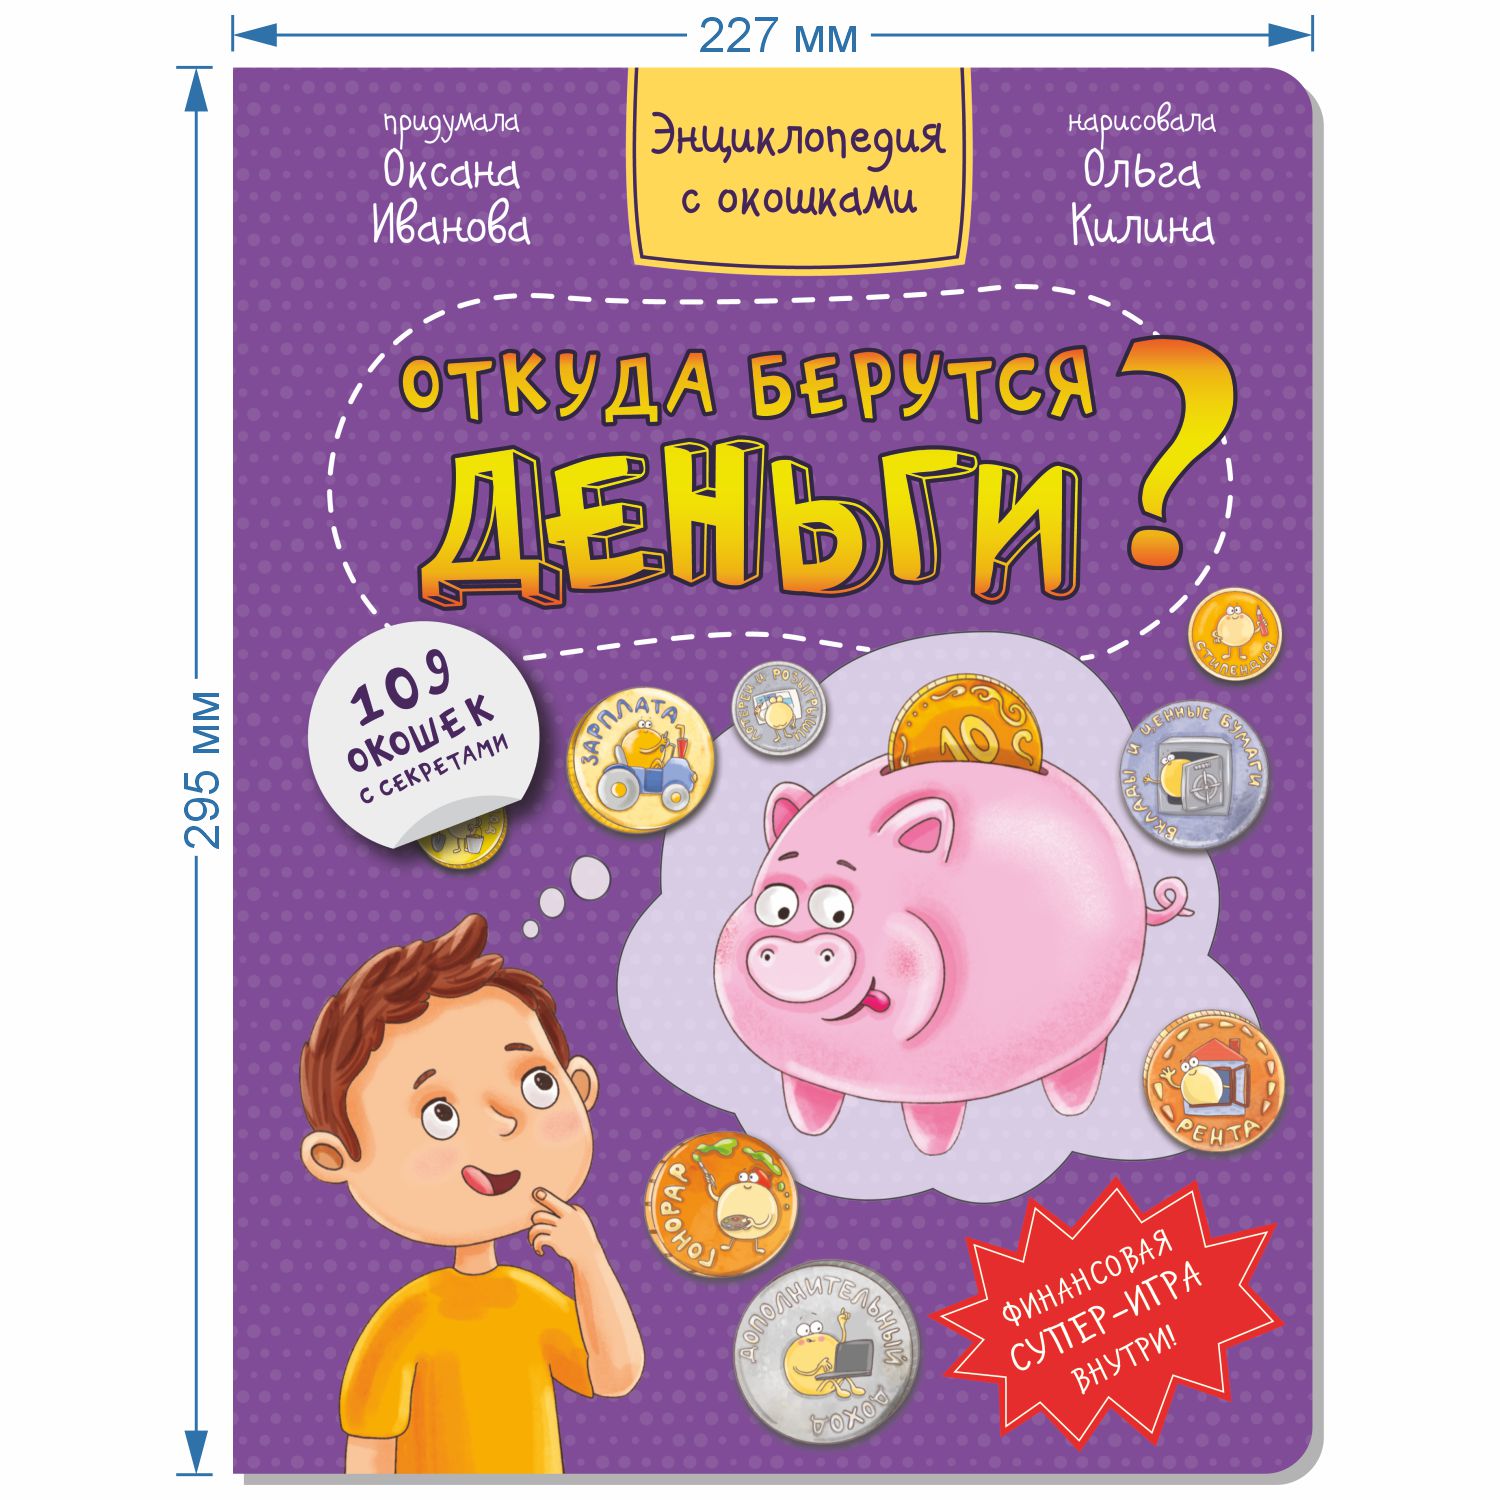 Детские книги Виммельбух BimBiMon Набор энциклопедий с окошками про машины и деньги - фото 7